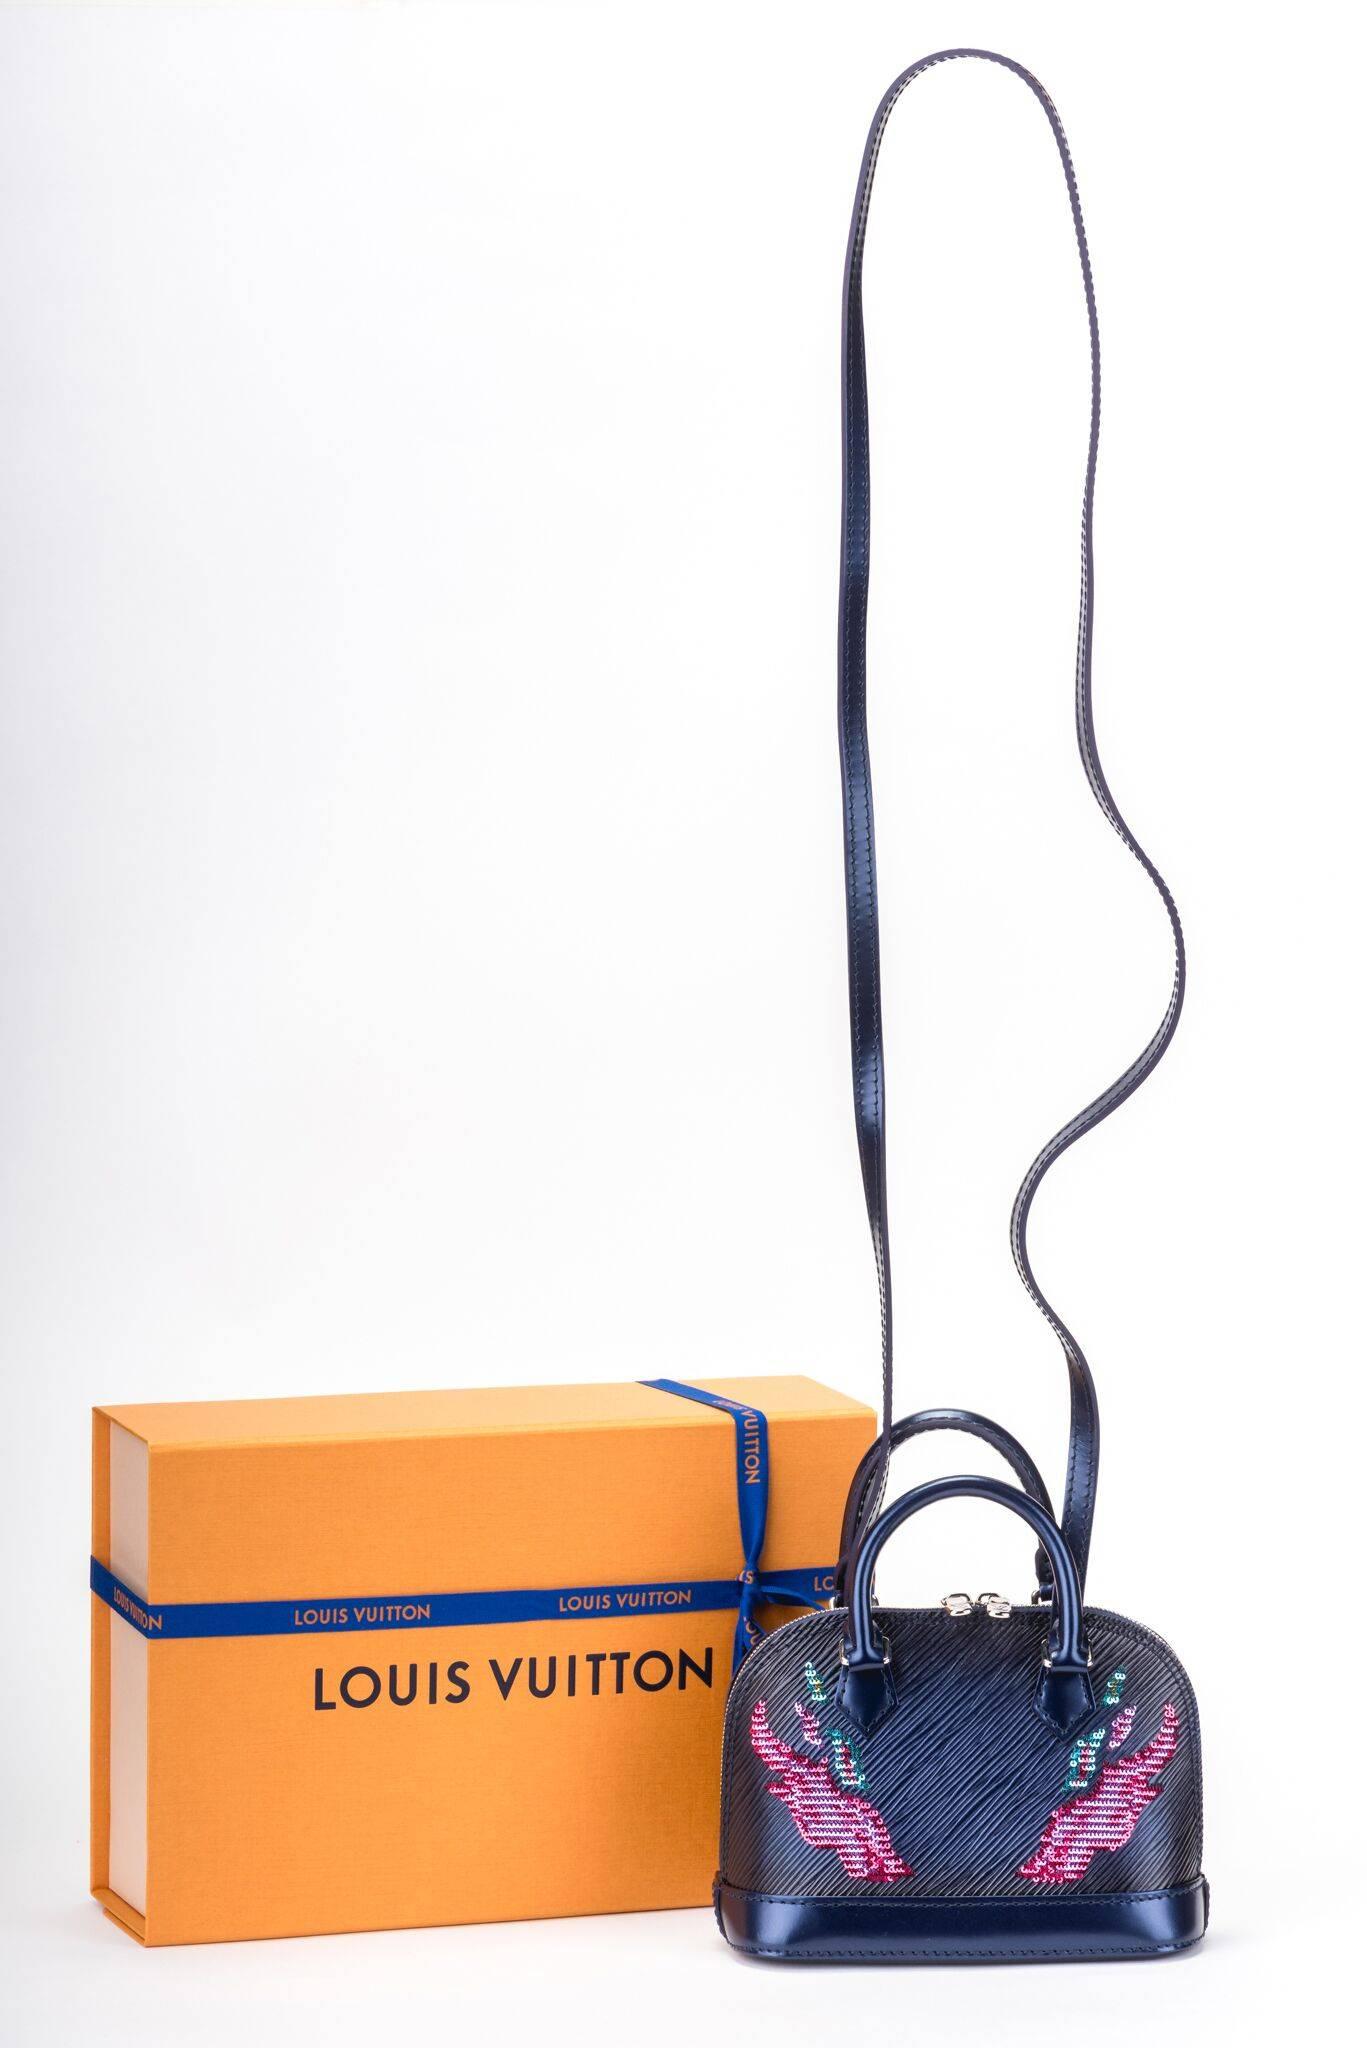 Louis Vuitton édition limitée nano alma en cuir épi avec design de flammes en paillettes. La sangle est détachable et la boîte est neuve, avec le ruban et la pochette.

Le sac mesure 6,5